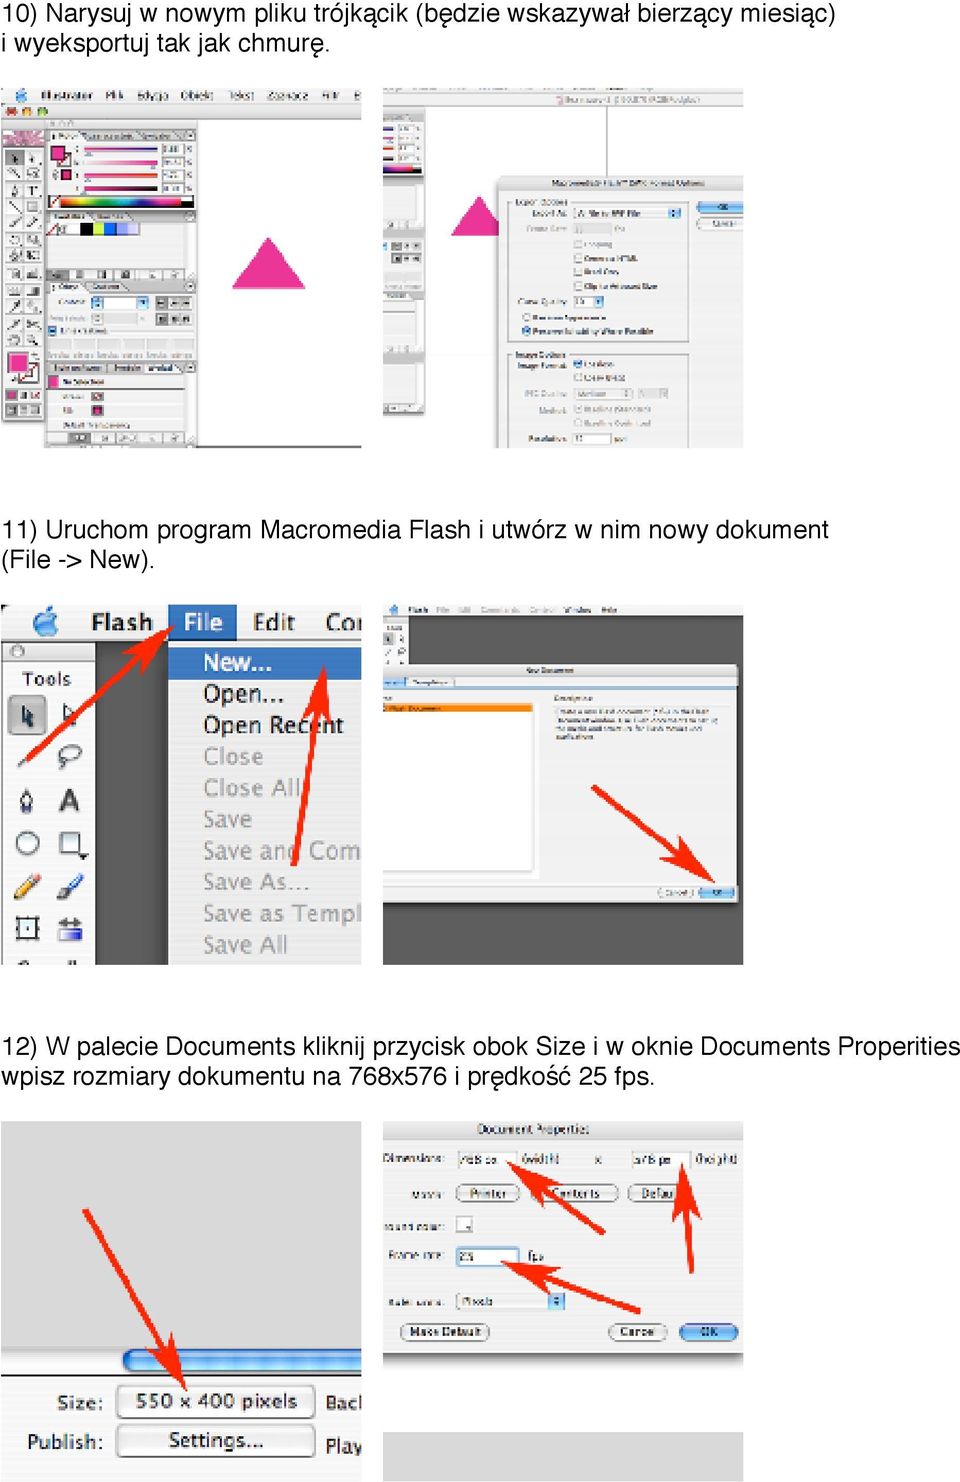 11) Uruchom program Macromedia Flash i utwórz w nim nowy dokument (File -> New).